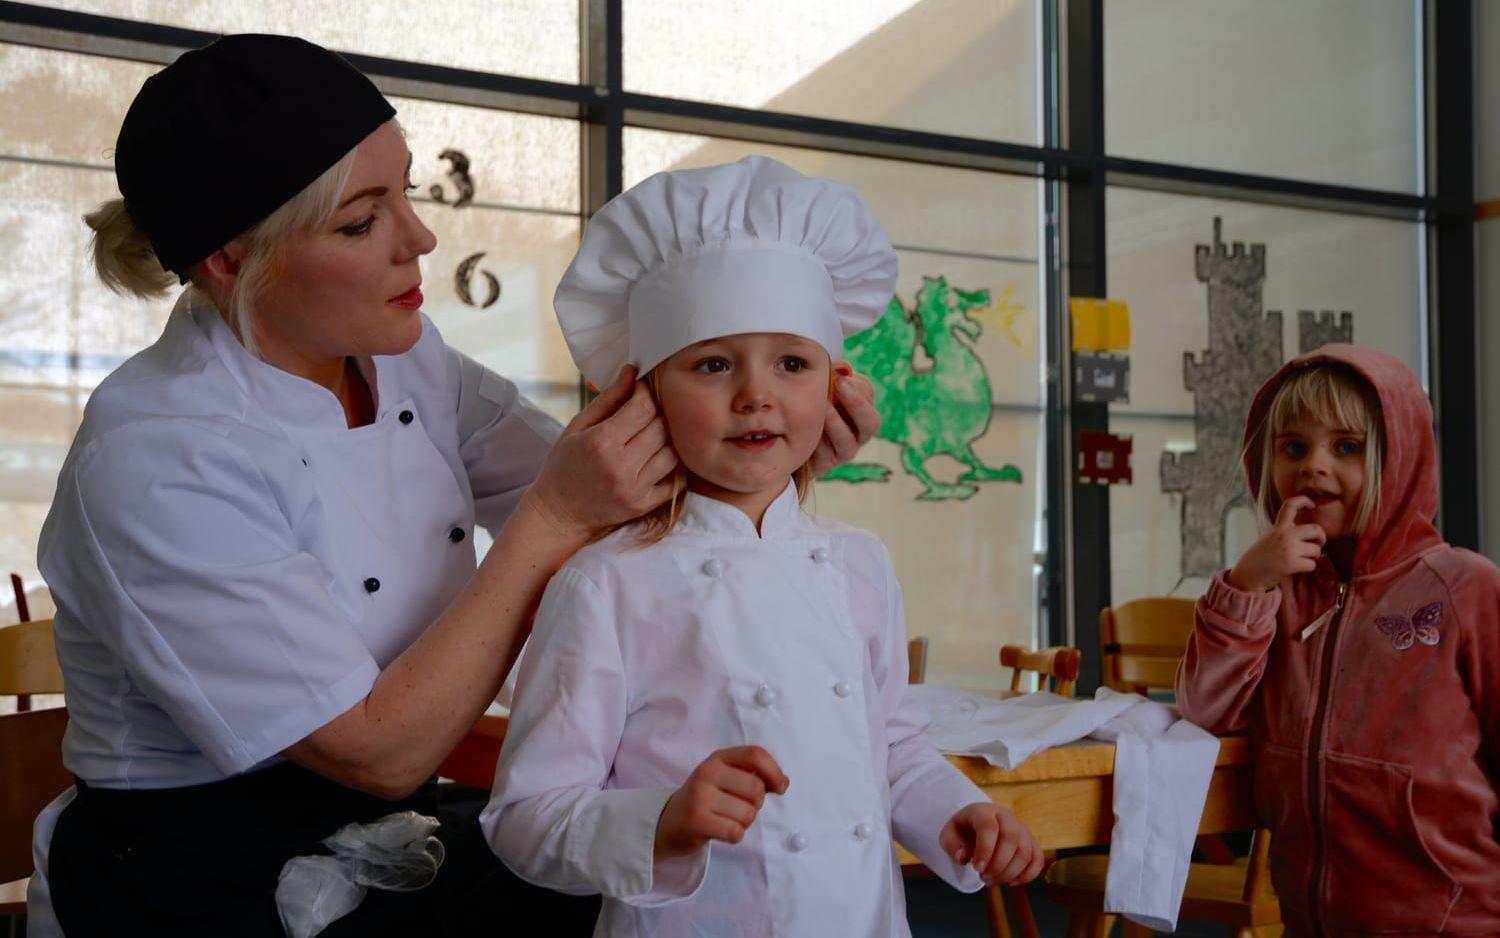 Skolan har köpt in kockkläder i rätt storlekar till barnen i förskolan. Dorotea Bollgård sätter mössan rätt. Bild: Karina Hansson